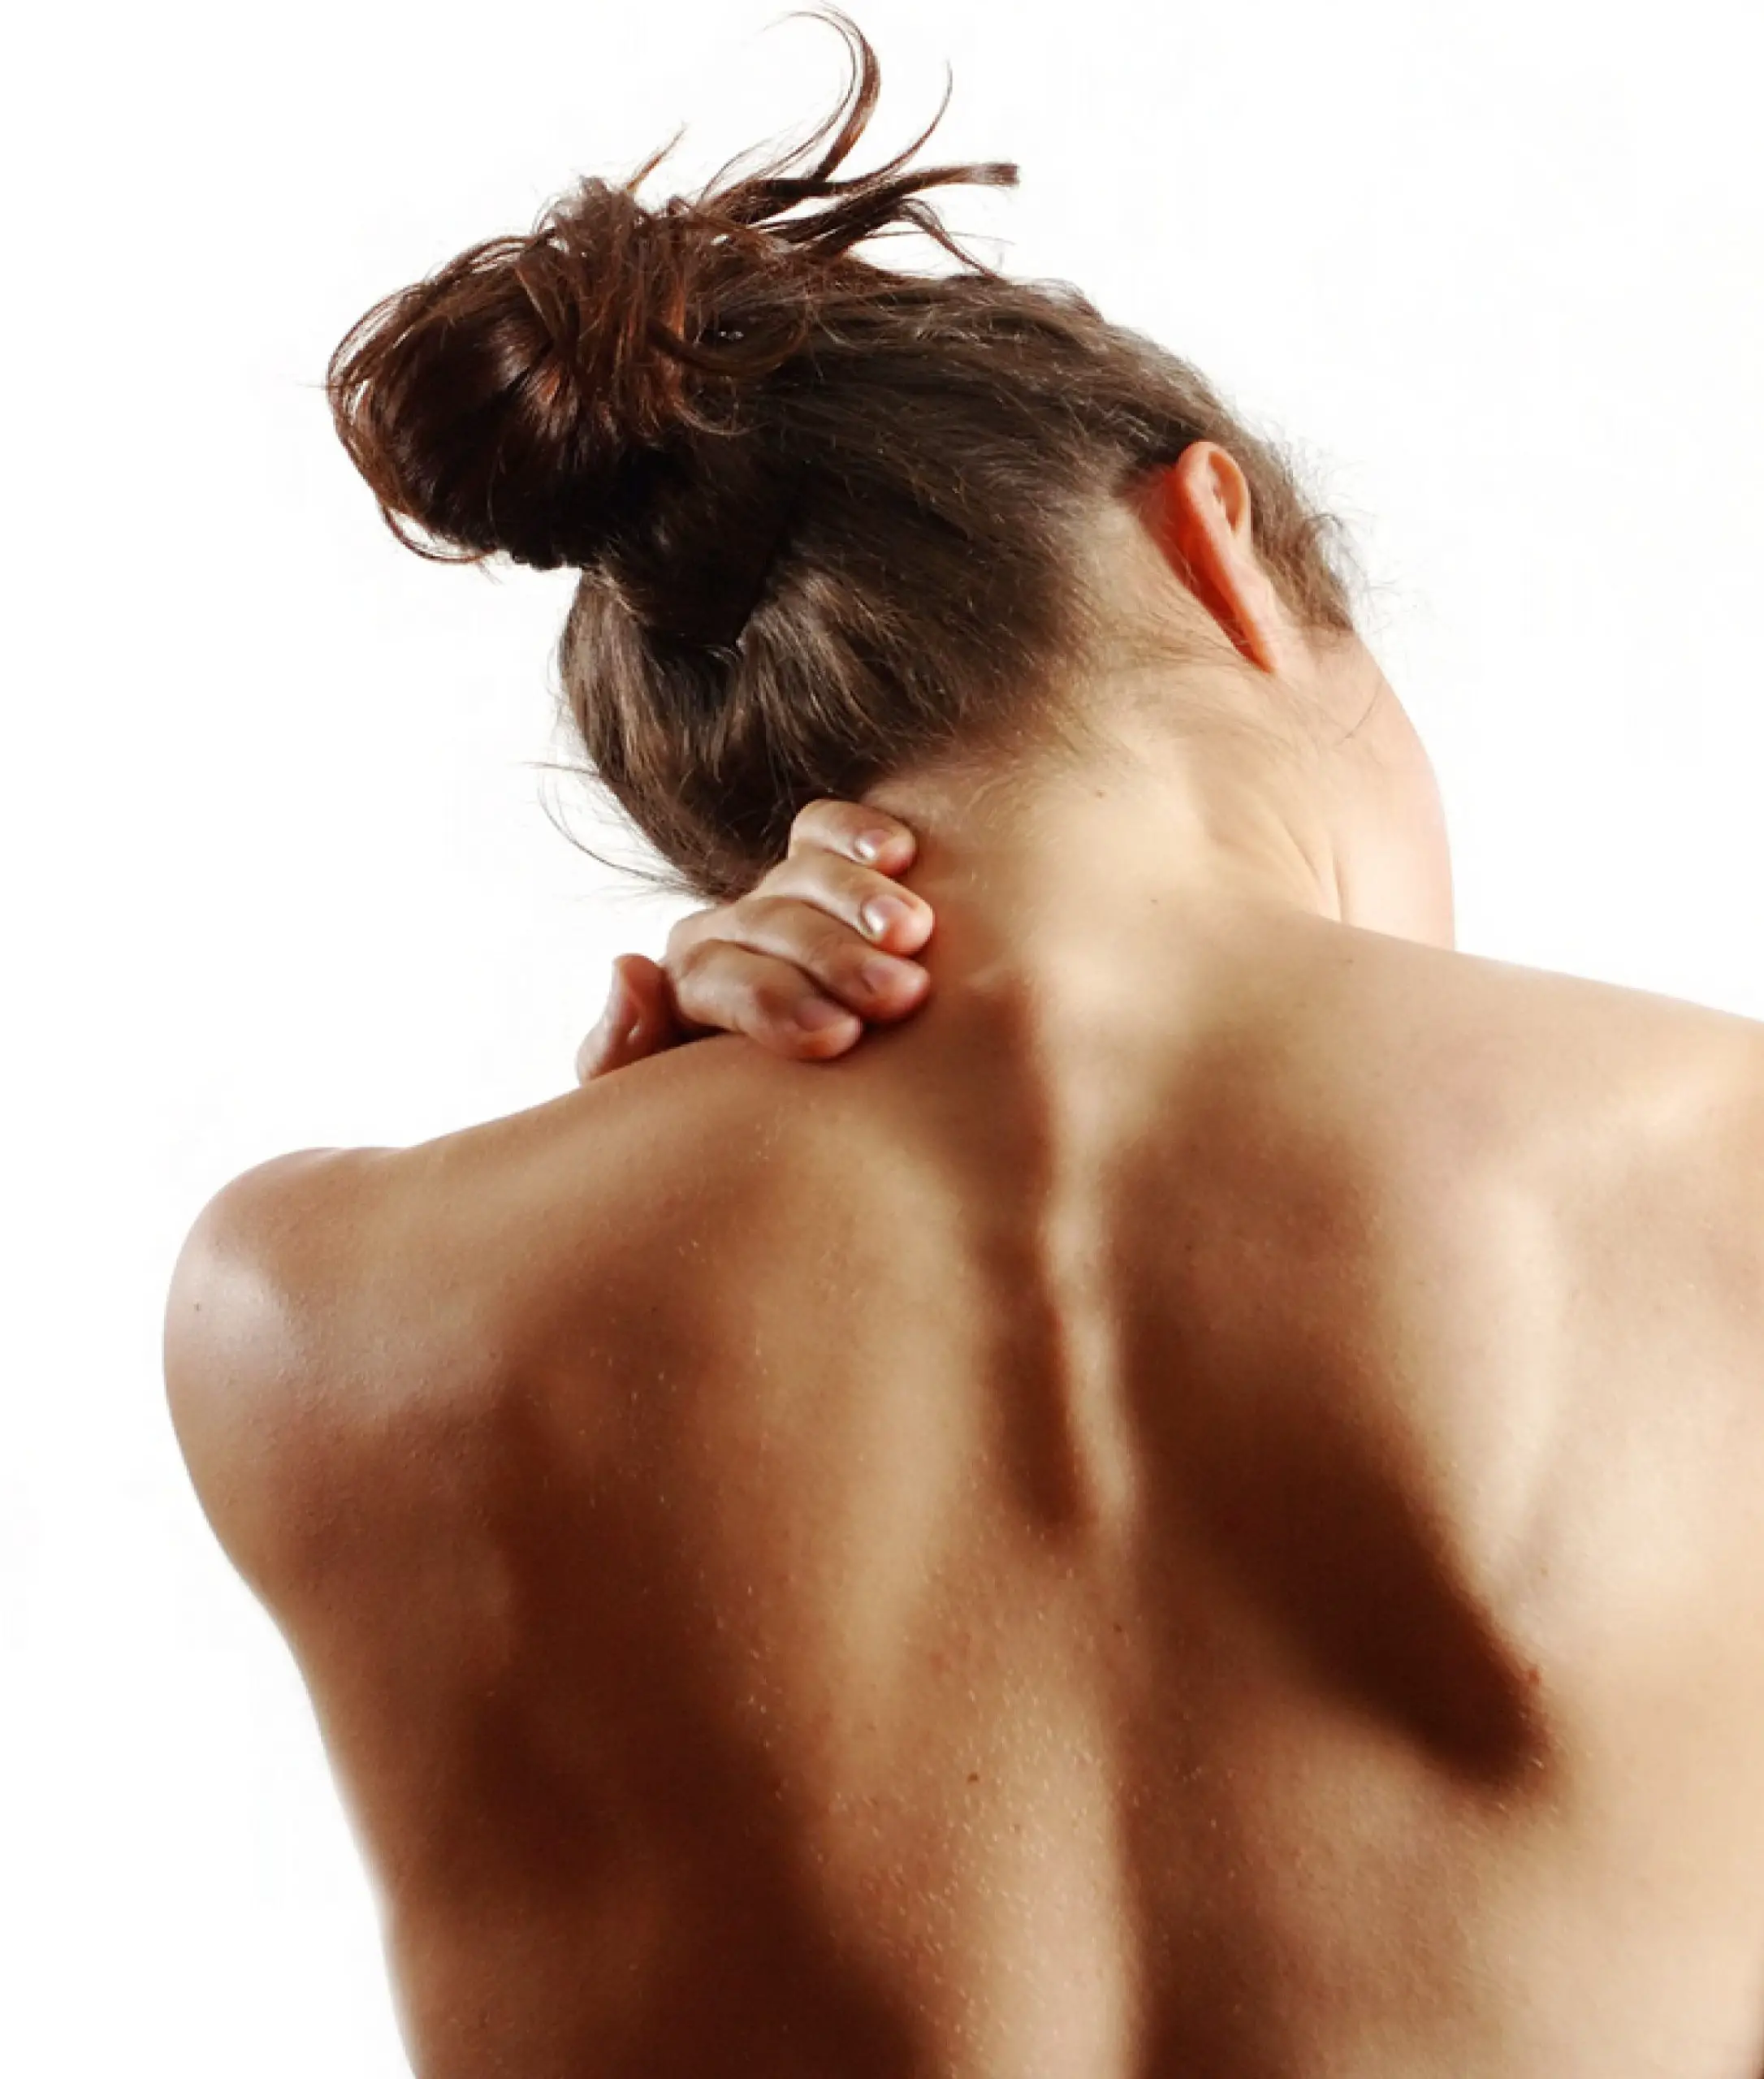 Pin on What Causes Fibromyalgia?